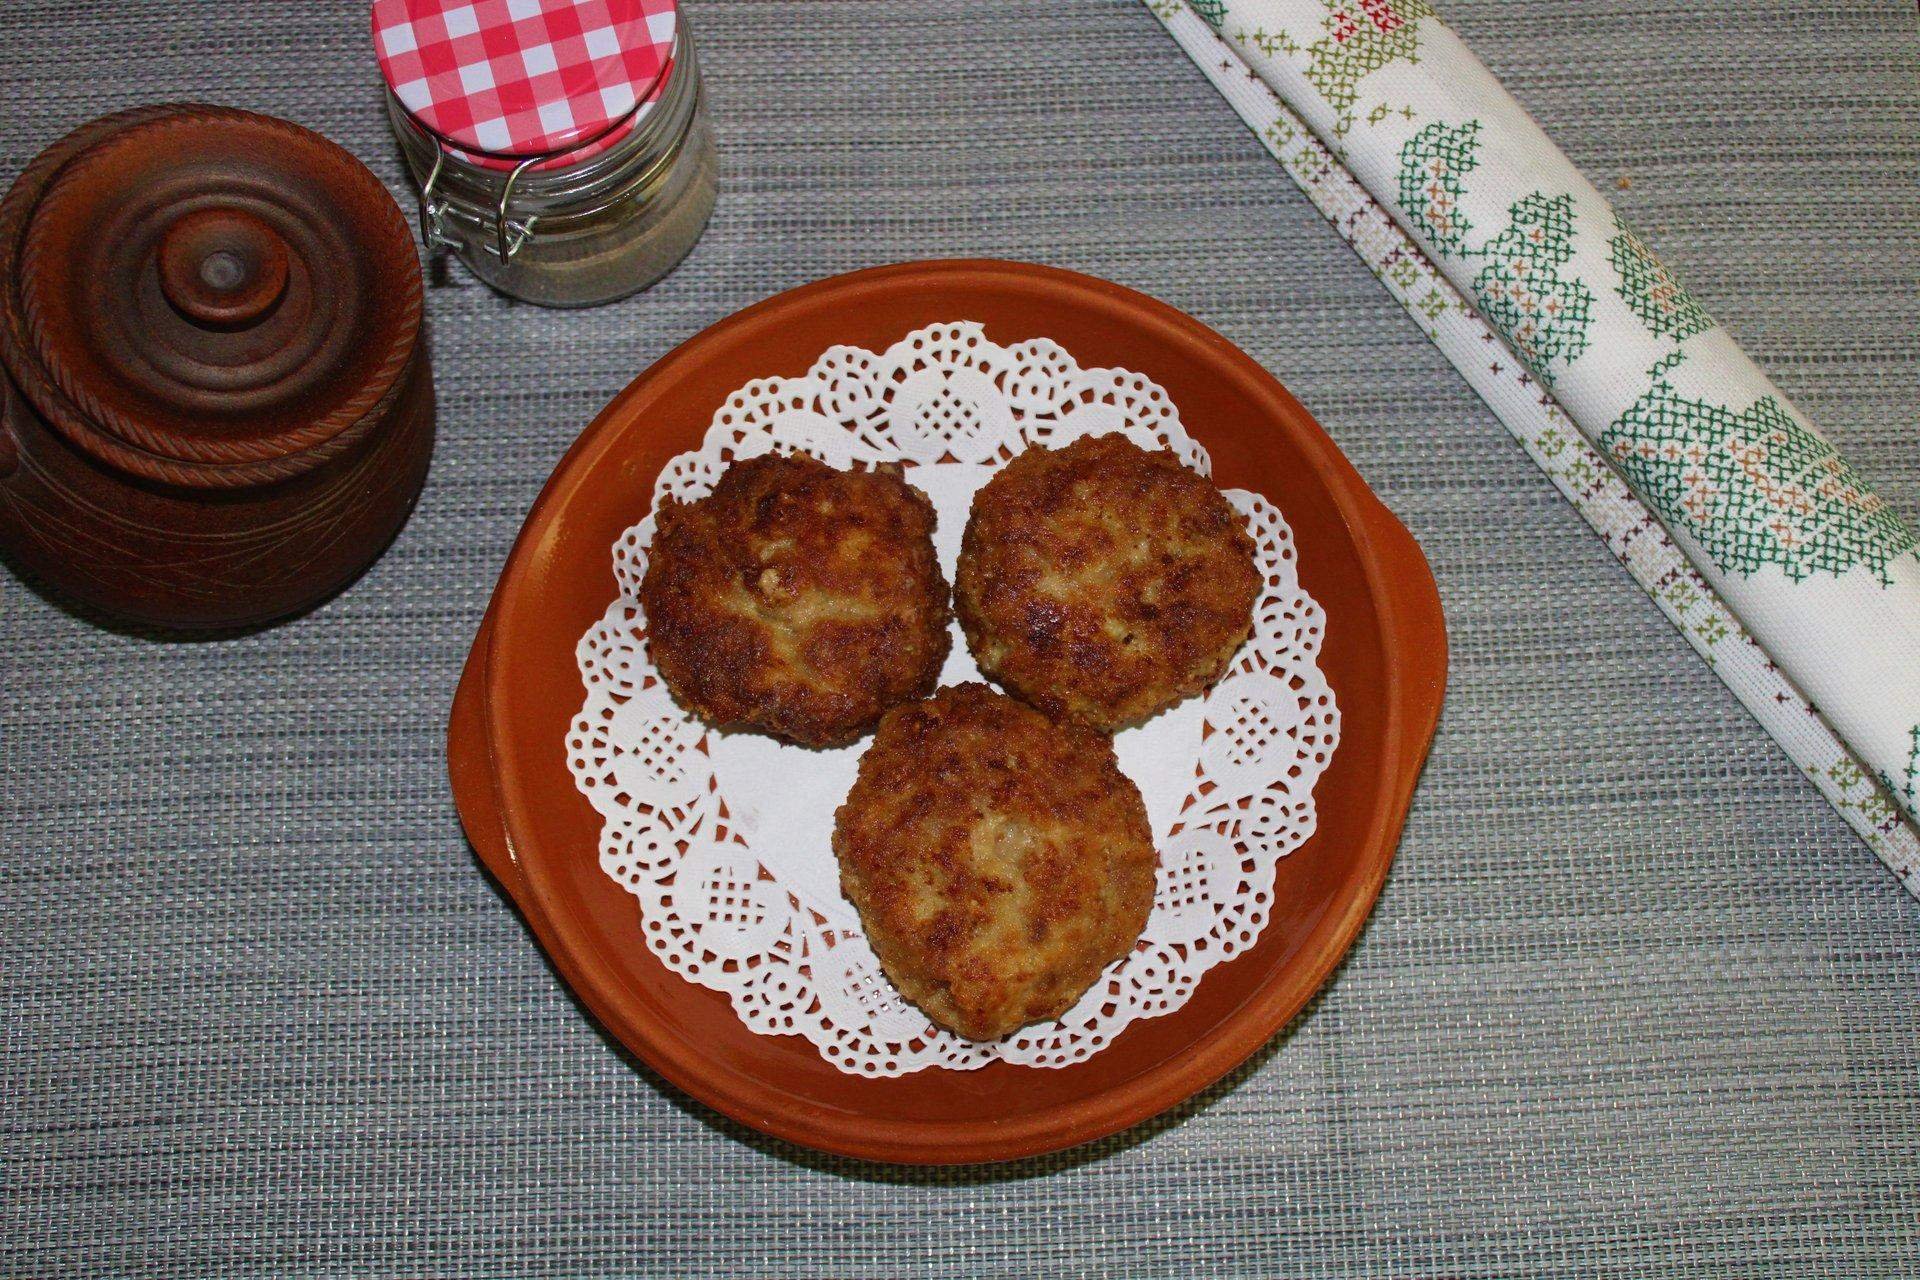 Блюда советской столовой рецепты с фото